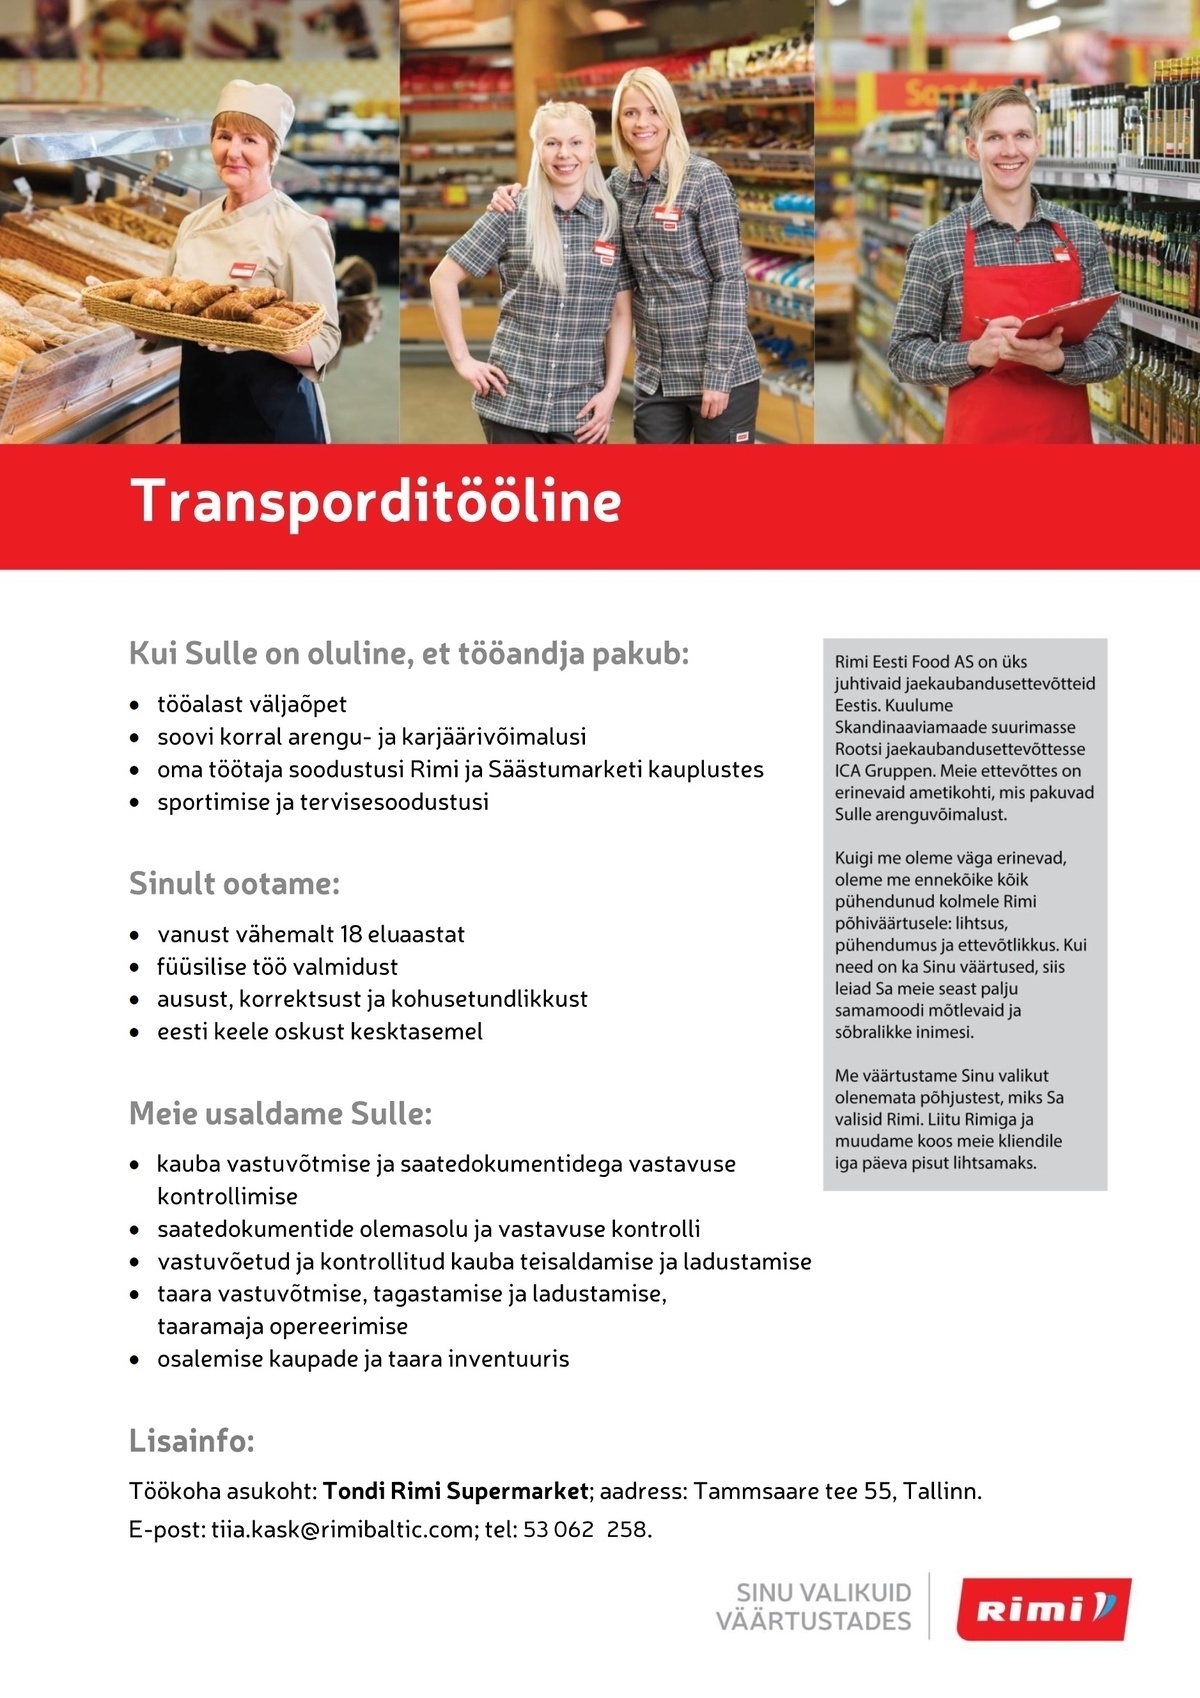 Rimi Eesti Food AS Transporditööline - Tondi Rimi Supermarket